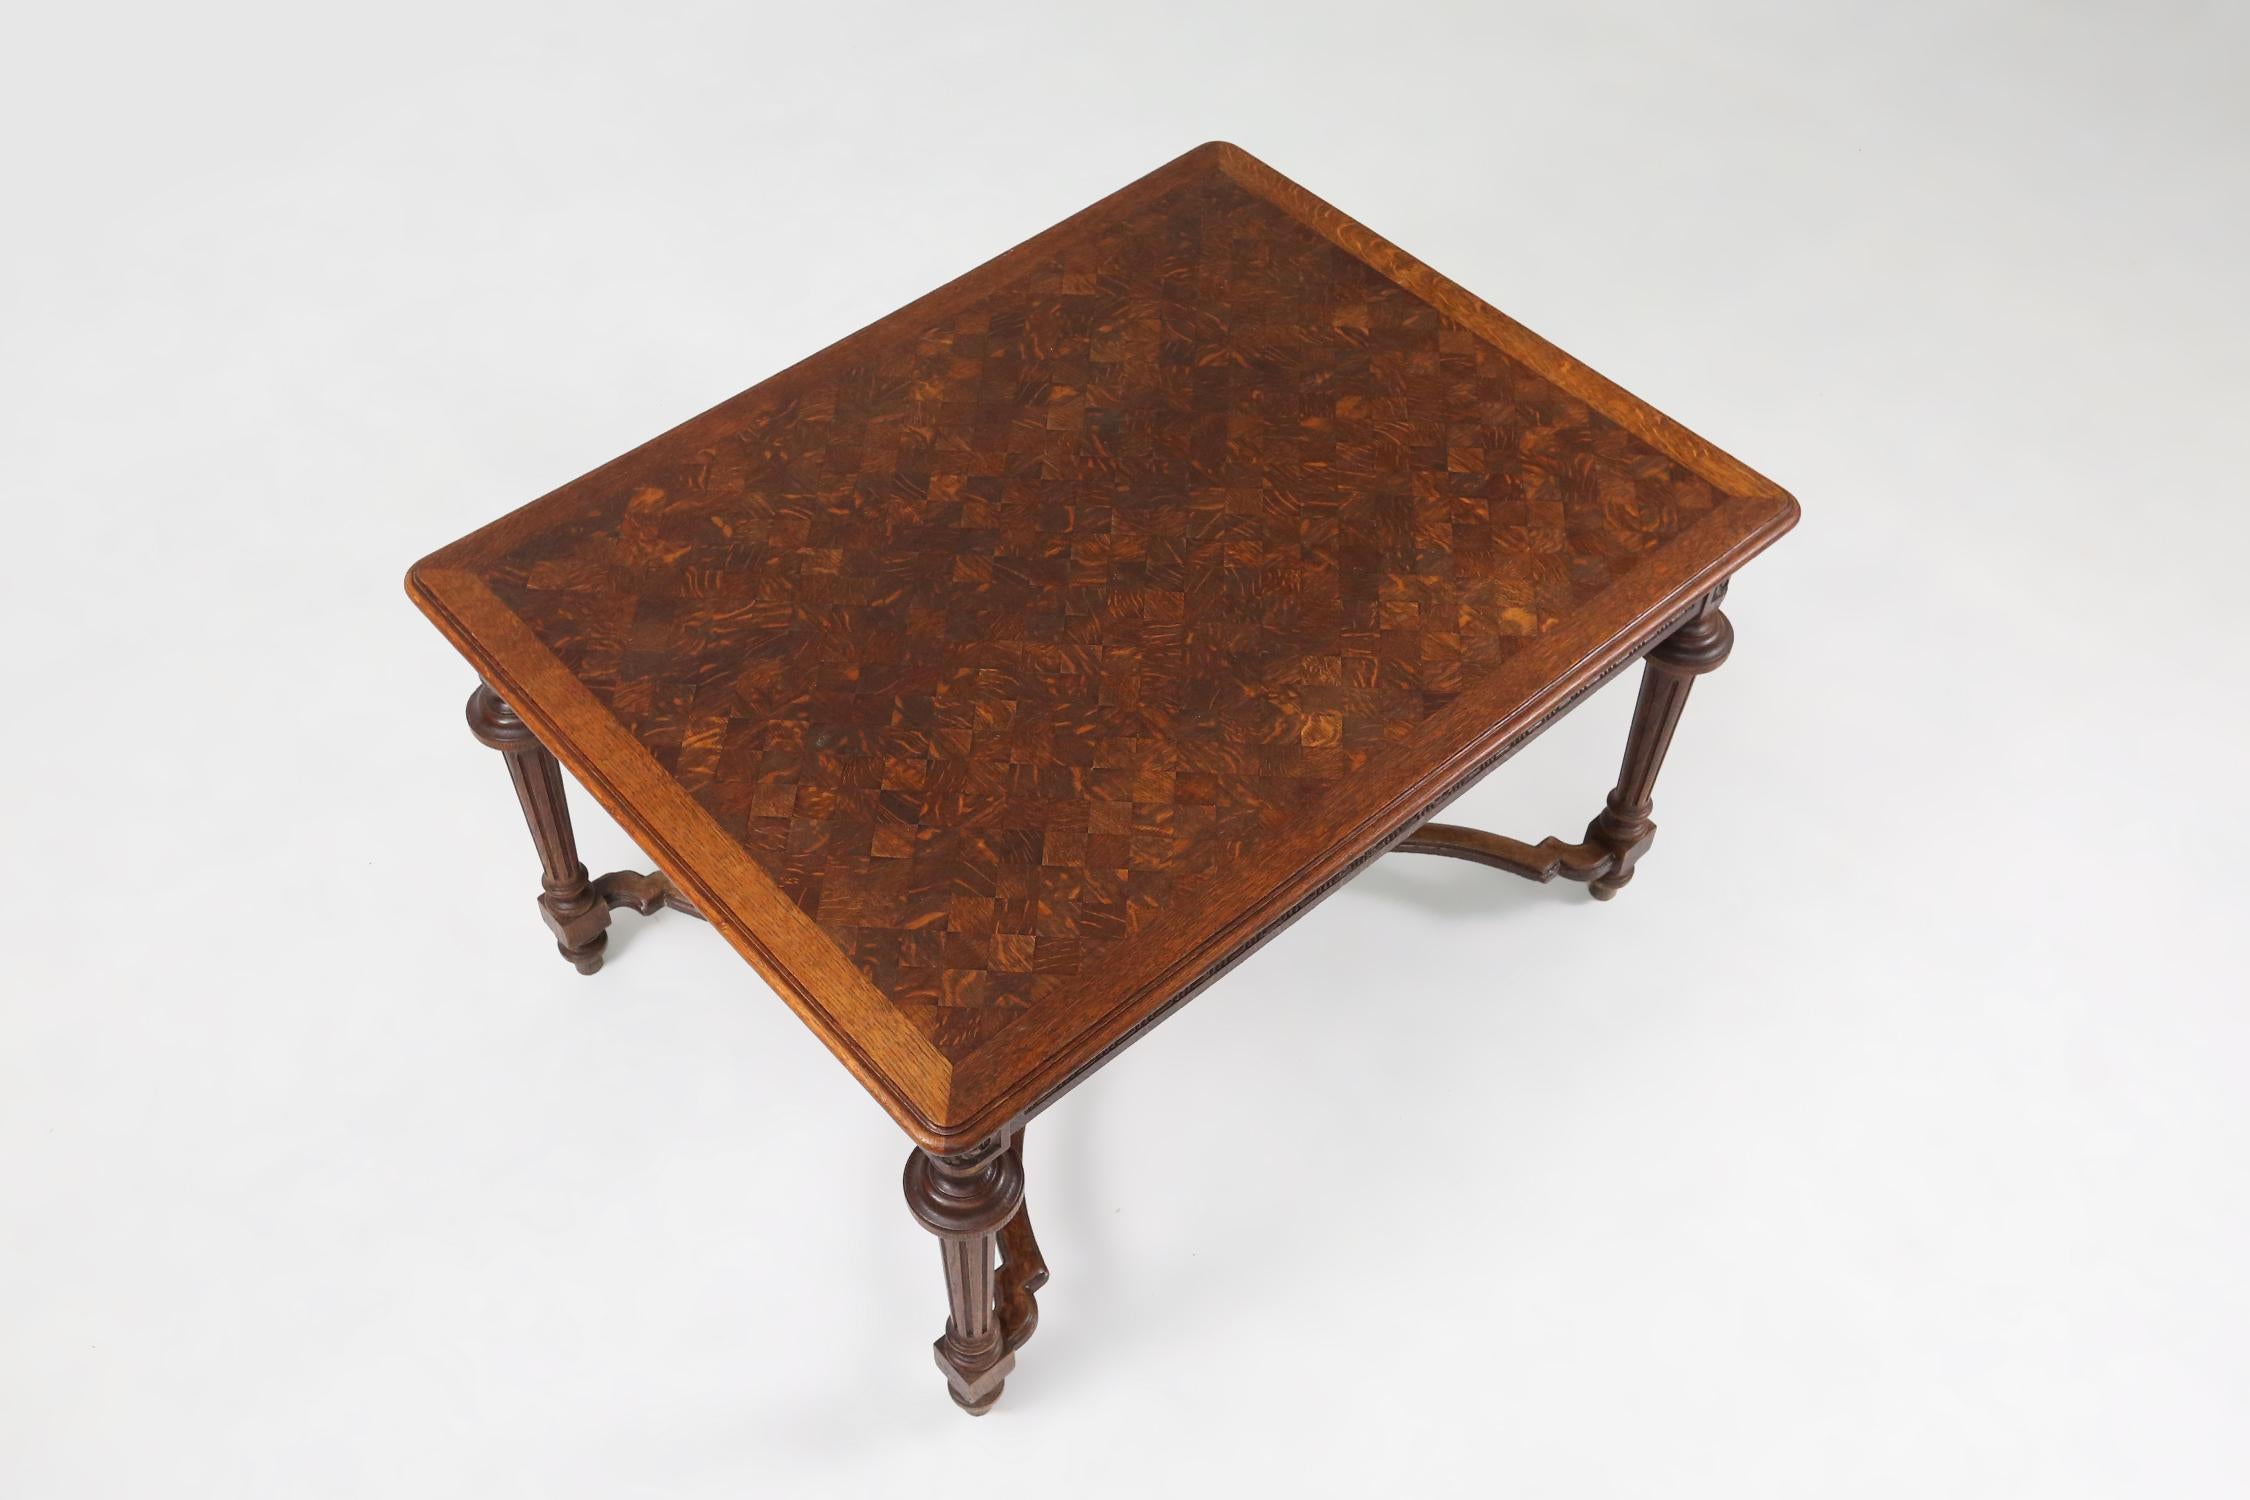 Frankreich / 1900 / Neo-Renaissance / ausziehbarer Esstisch / handgeschnitztes Holz und Schachbrettplatte   

Dieser exquisite Tisch ist ein schwer zu findendes Stück Neo-Renaissance-Design, das aus Frankreich um 1900 stammt. Die komplizierten